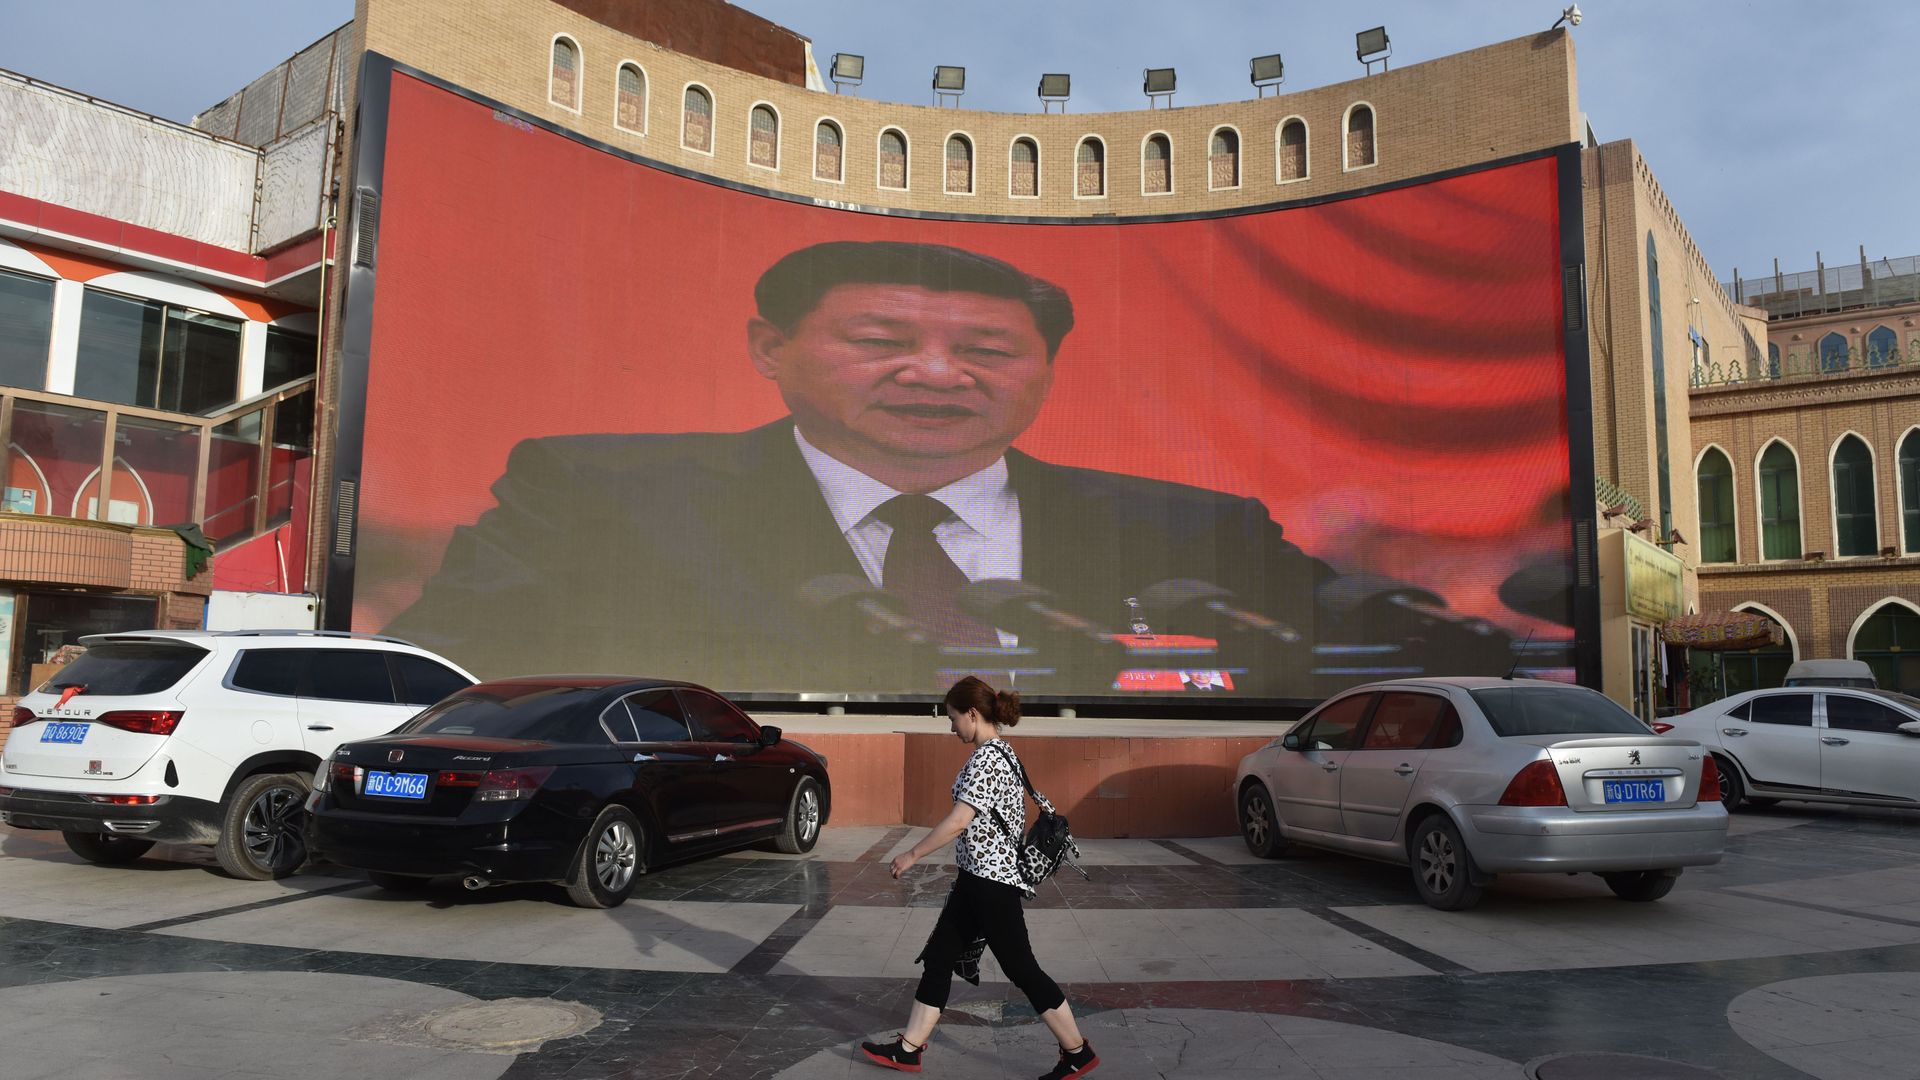 A screen showing images of Chinese President Xi Jinping in Xinjiang